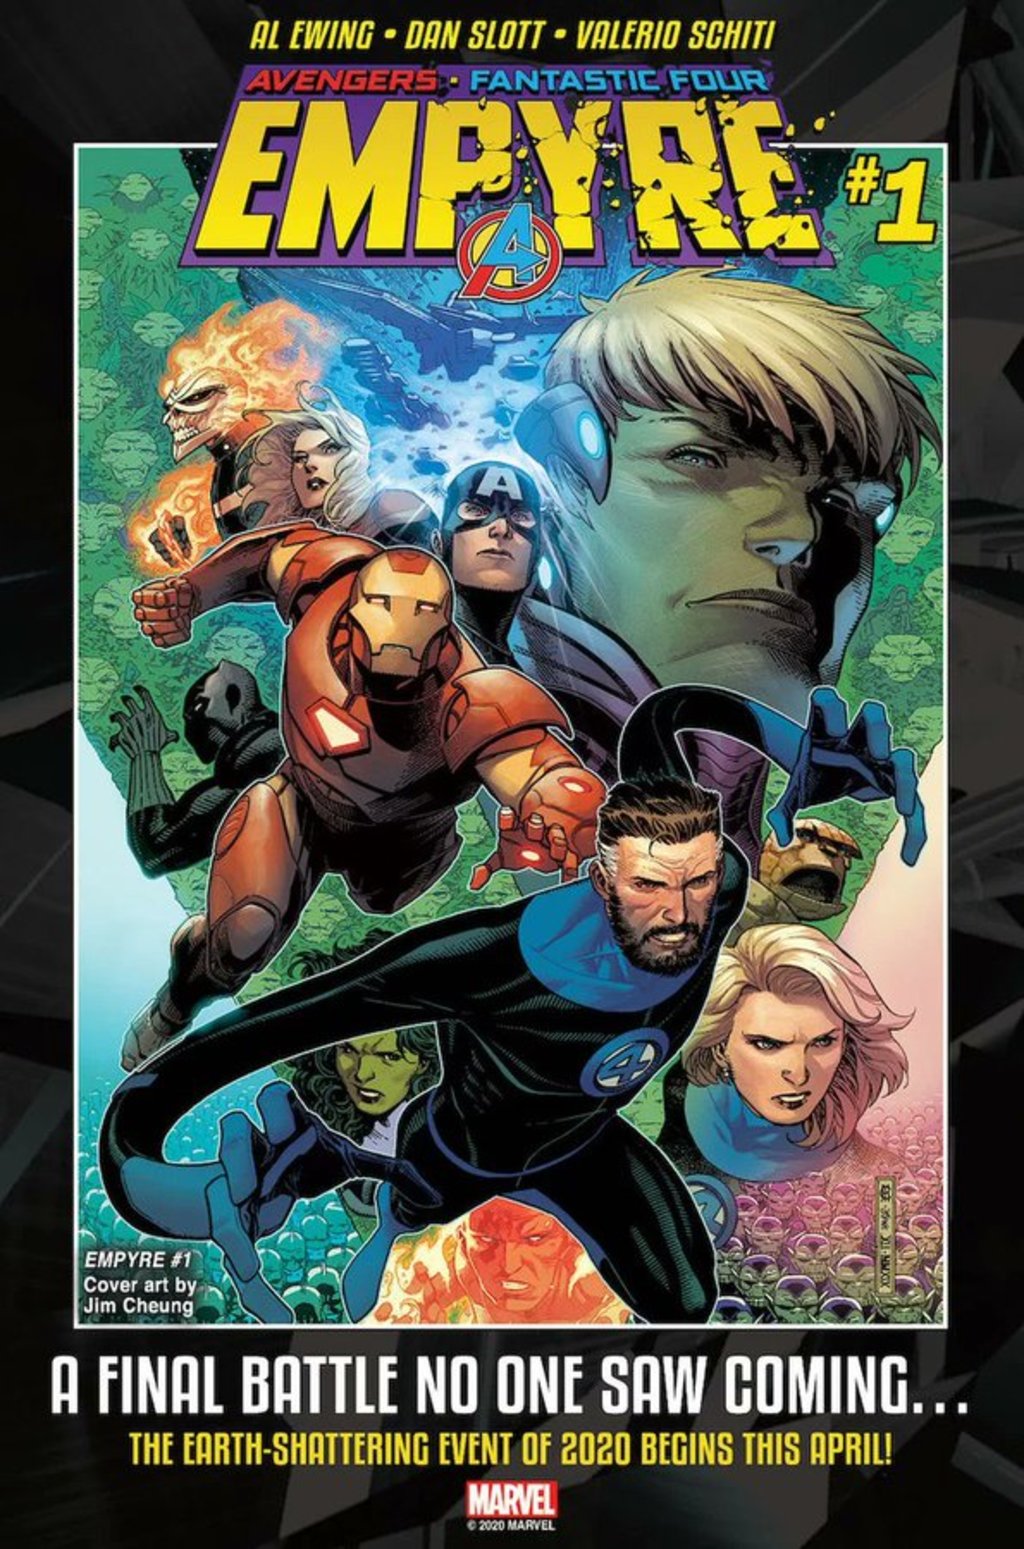 En redes. Ya se destapó una de las portadas en las que puede verse a los Avengers con los Cuatro fantásticos.